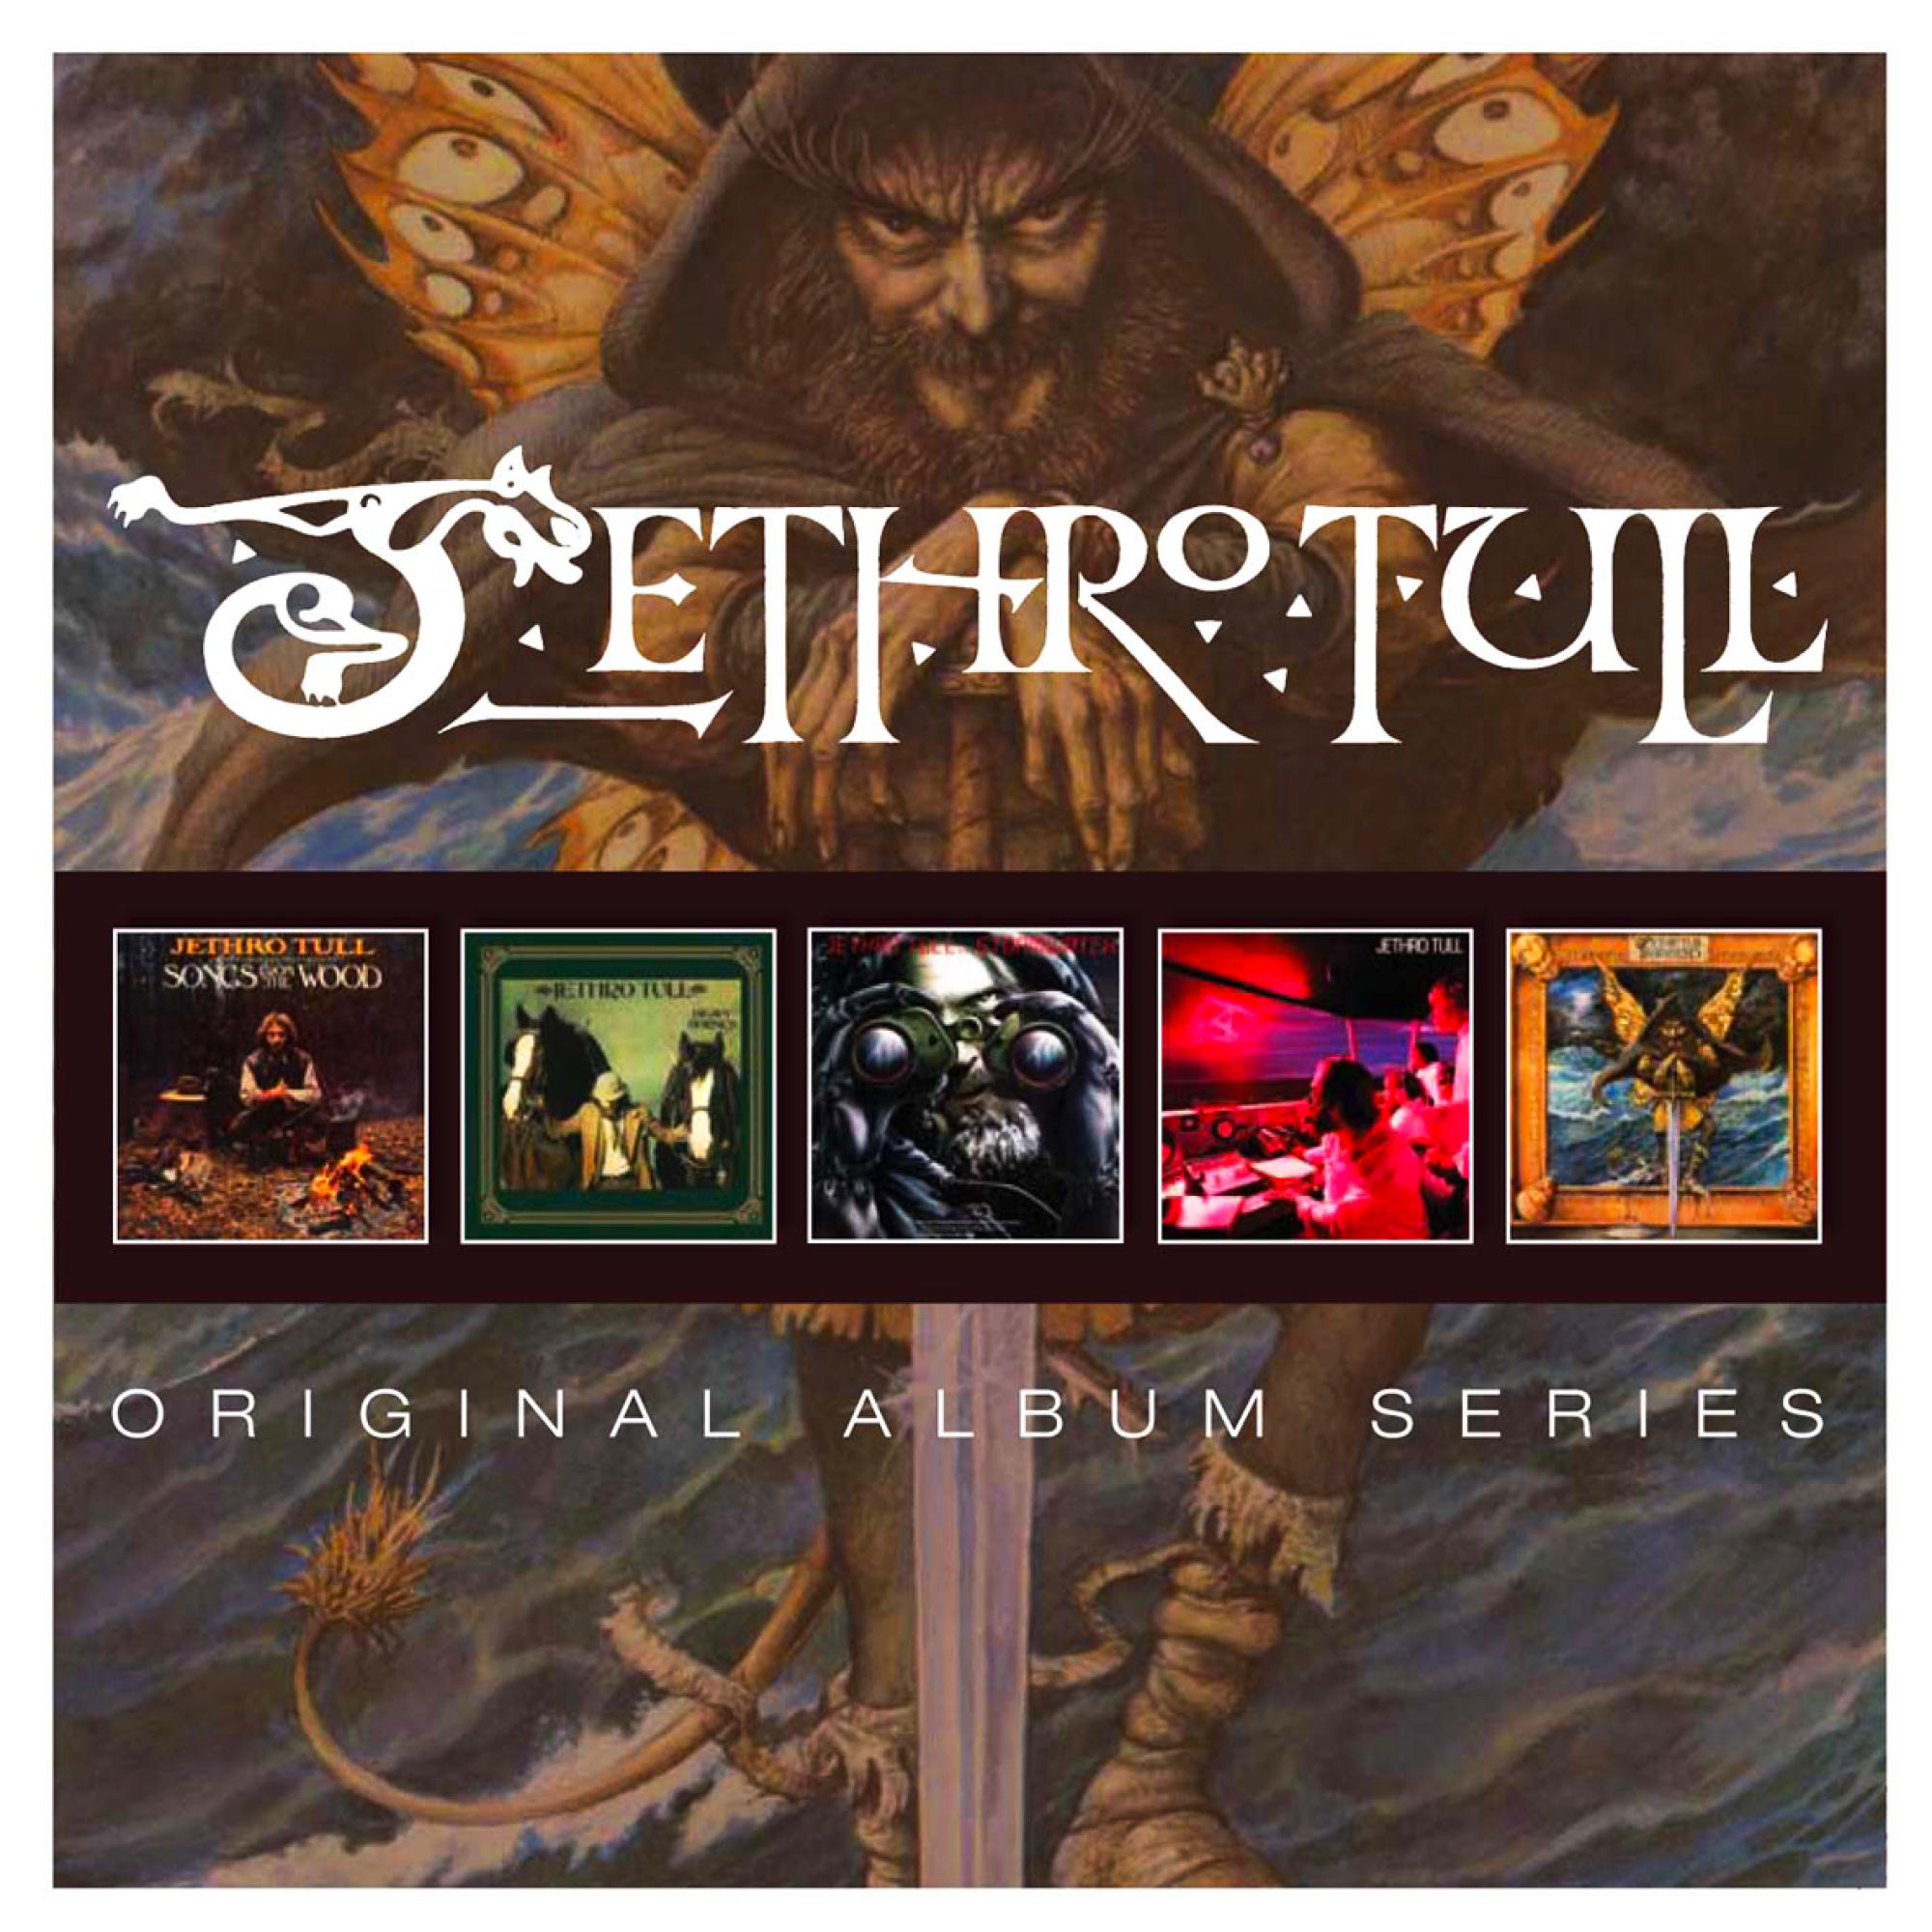 (5 - Original Album Series Cd Box) Tull - Jethro (CD)